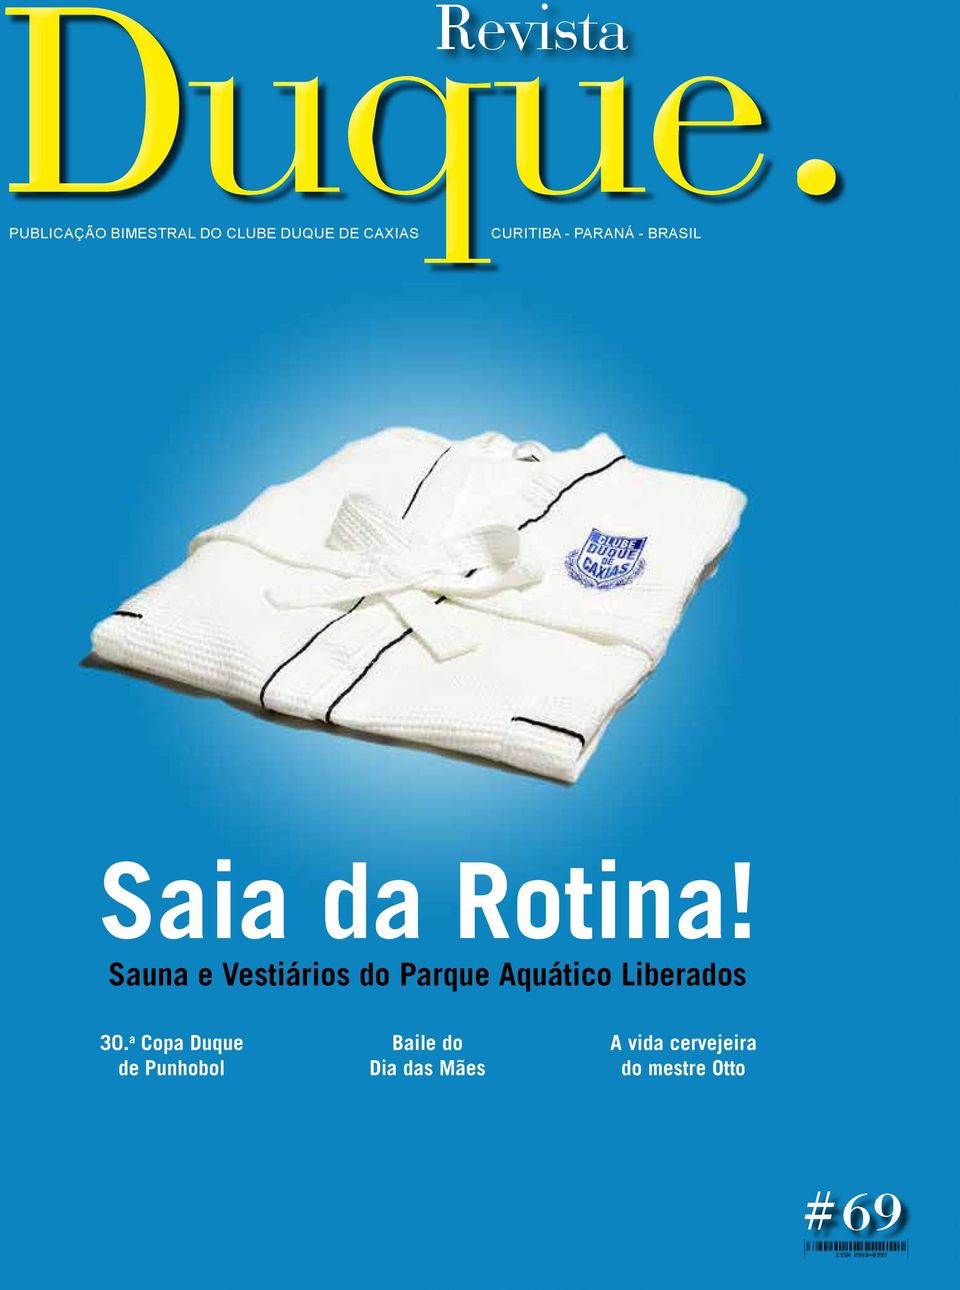 Curitiba - PARANÁ - BRASIL Saia da Rotina!